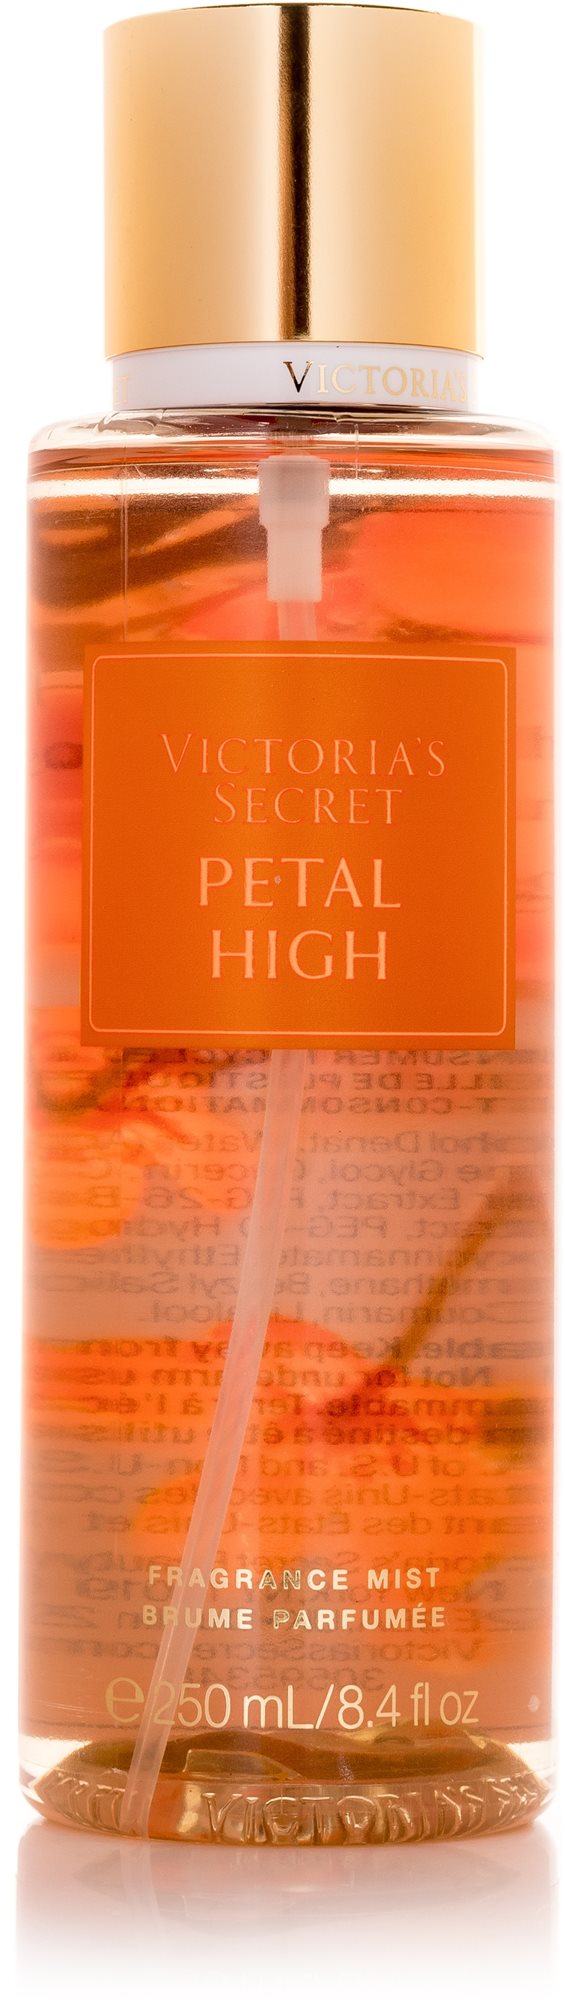 VICTORIA'S SECRET Petal High 250 ml